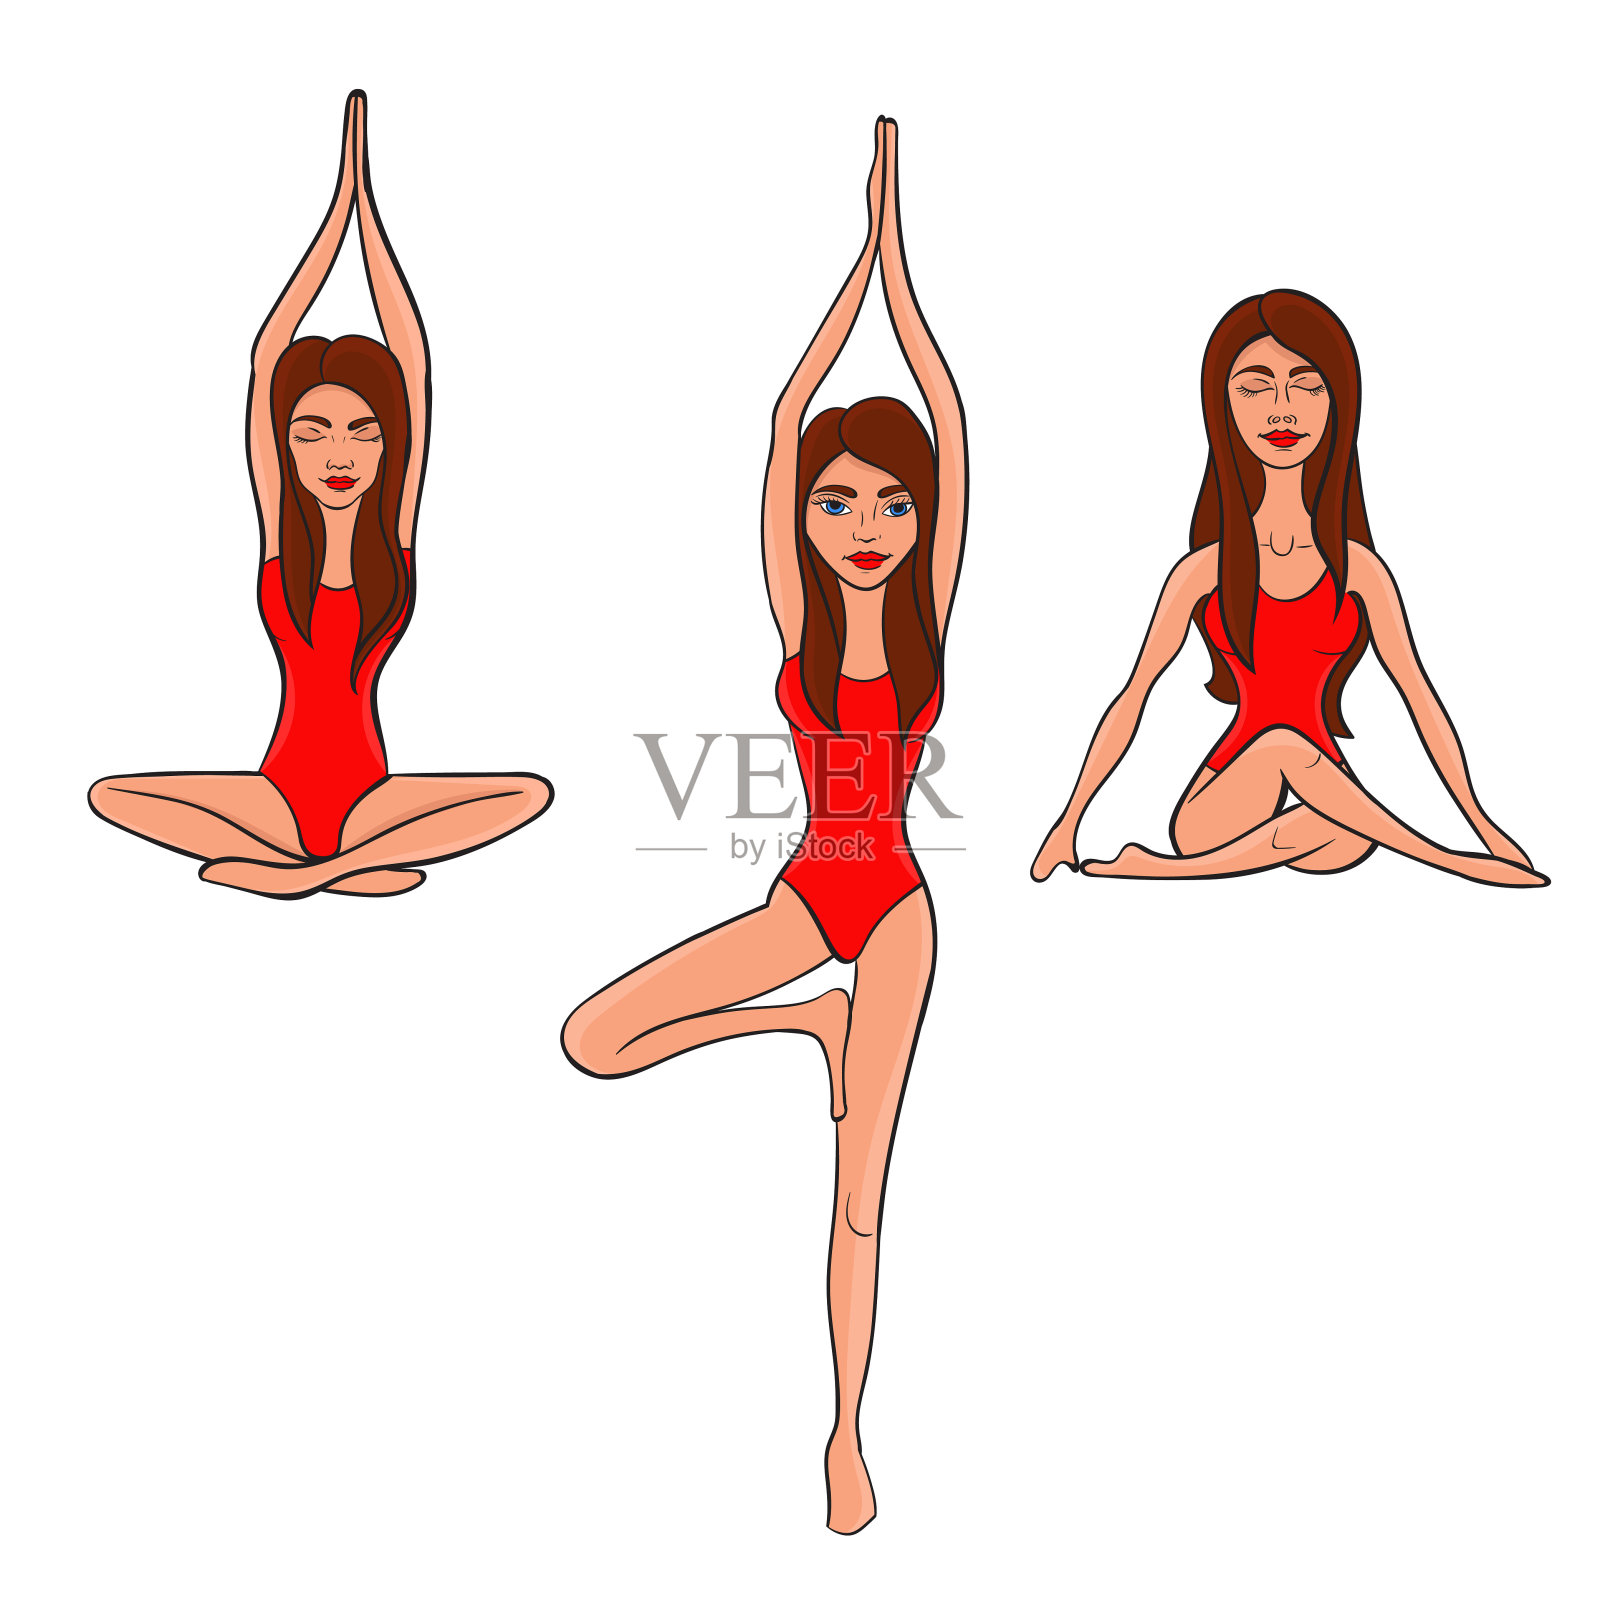 瑜伽。那个穿红色泳衣的女孩在做瑜伽练习。矢量插图。插画图片素材